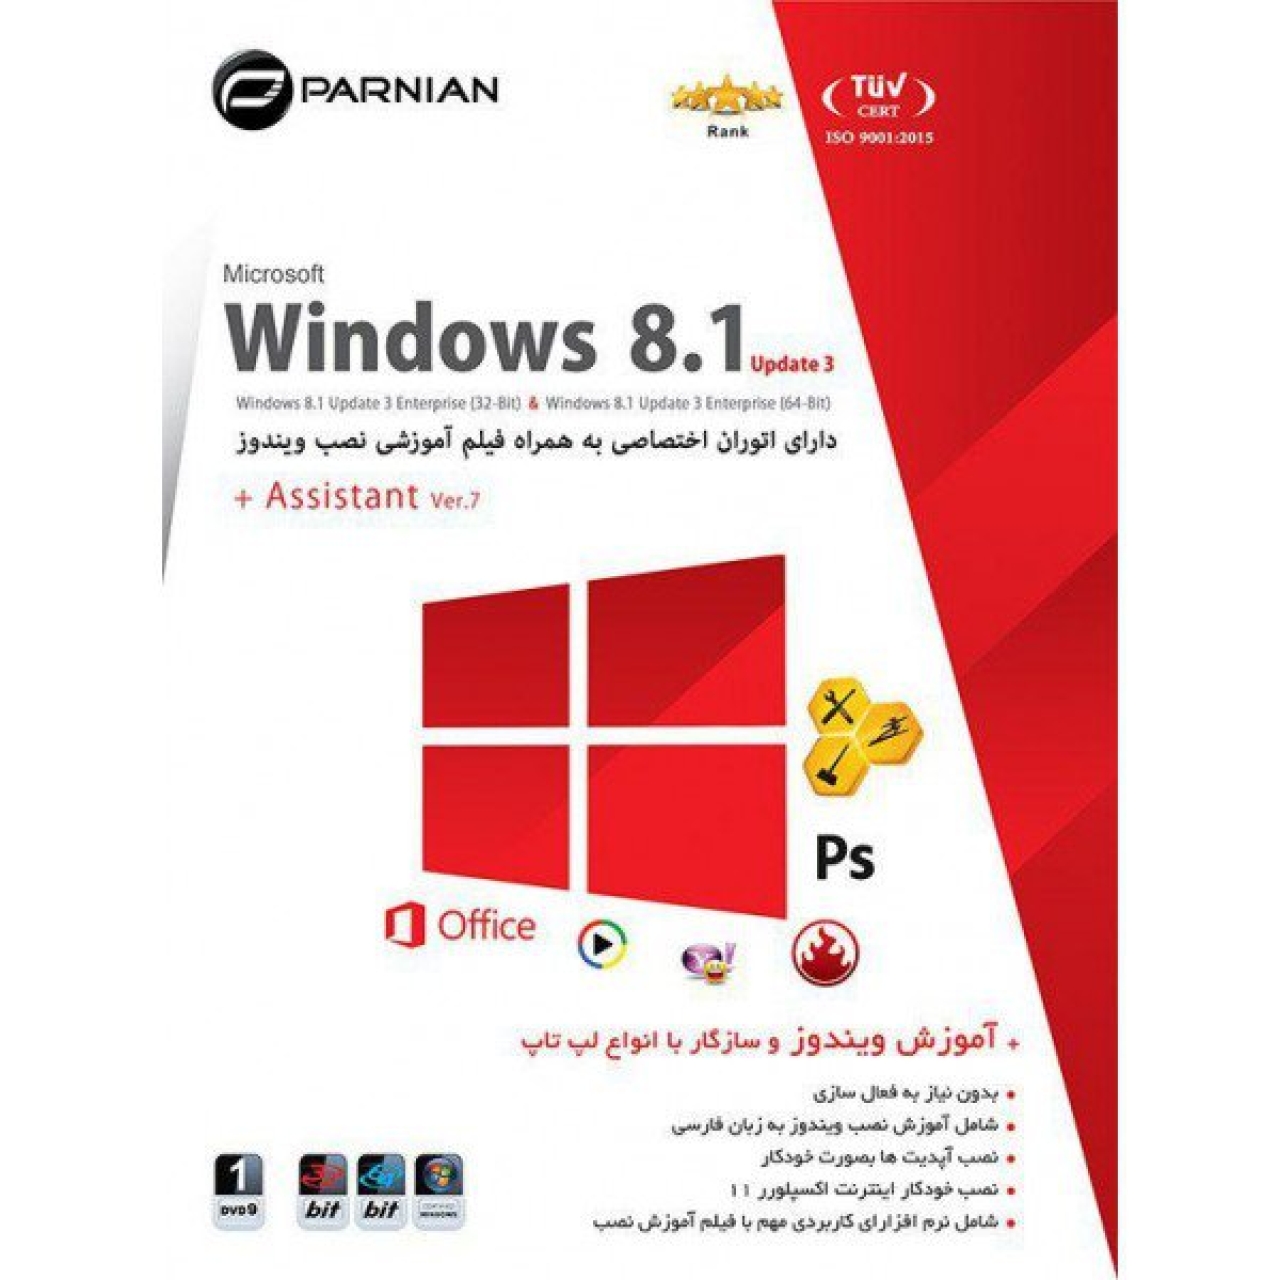 نرم افزار ویندوز 8 به همراه اسیستنت Ver.7 نشر پرنیان